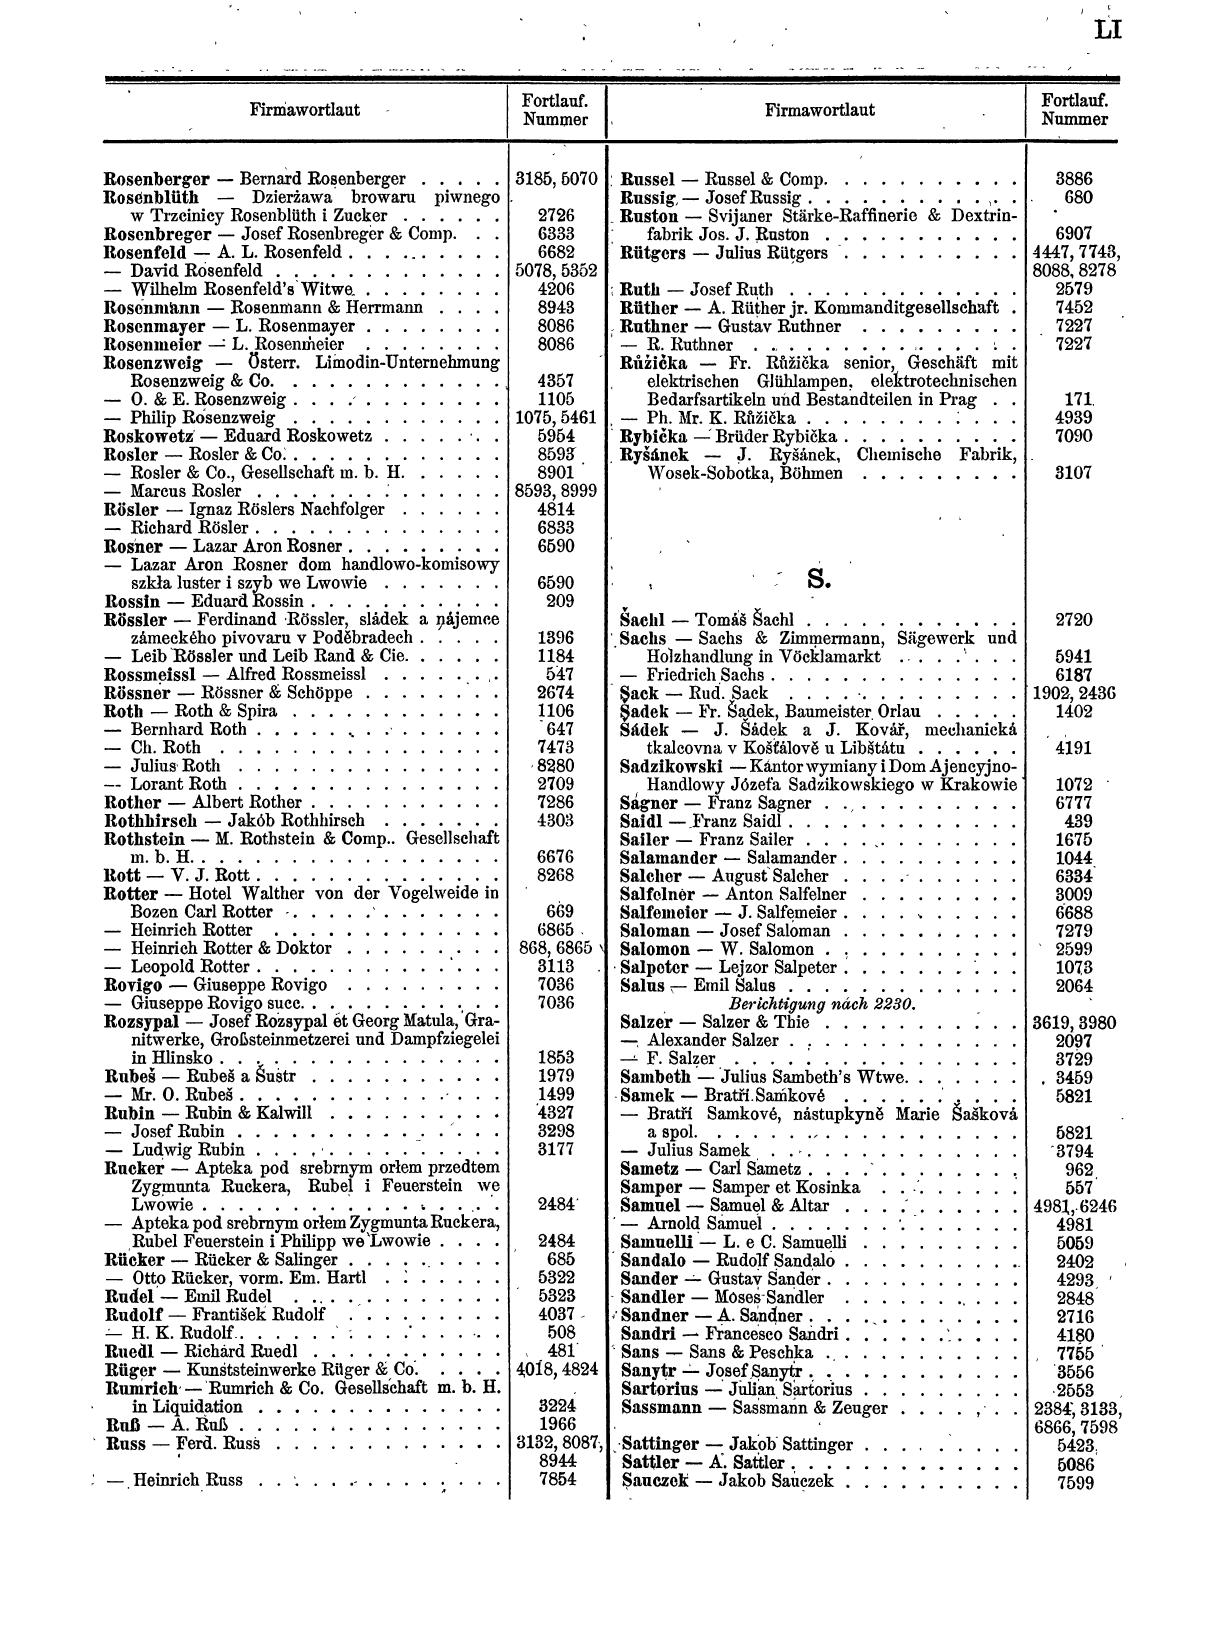 Zentralblatt für die Eintragungen in das Handelsregister 1913, Teil 1 - Seite 59